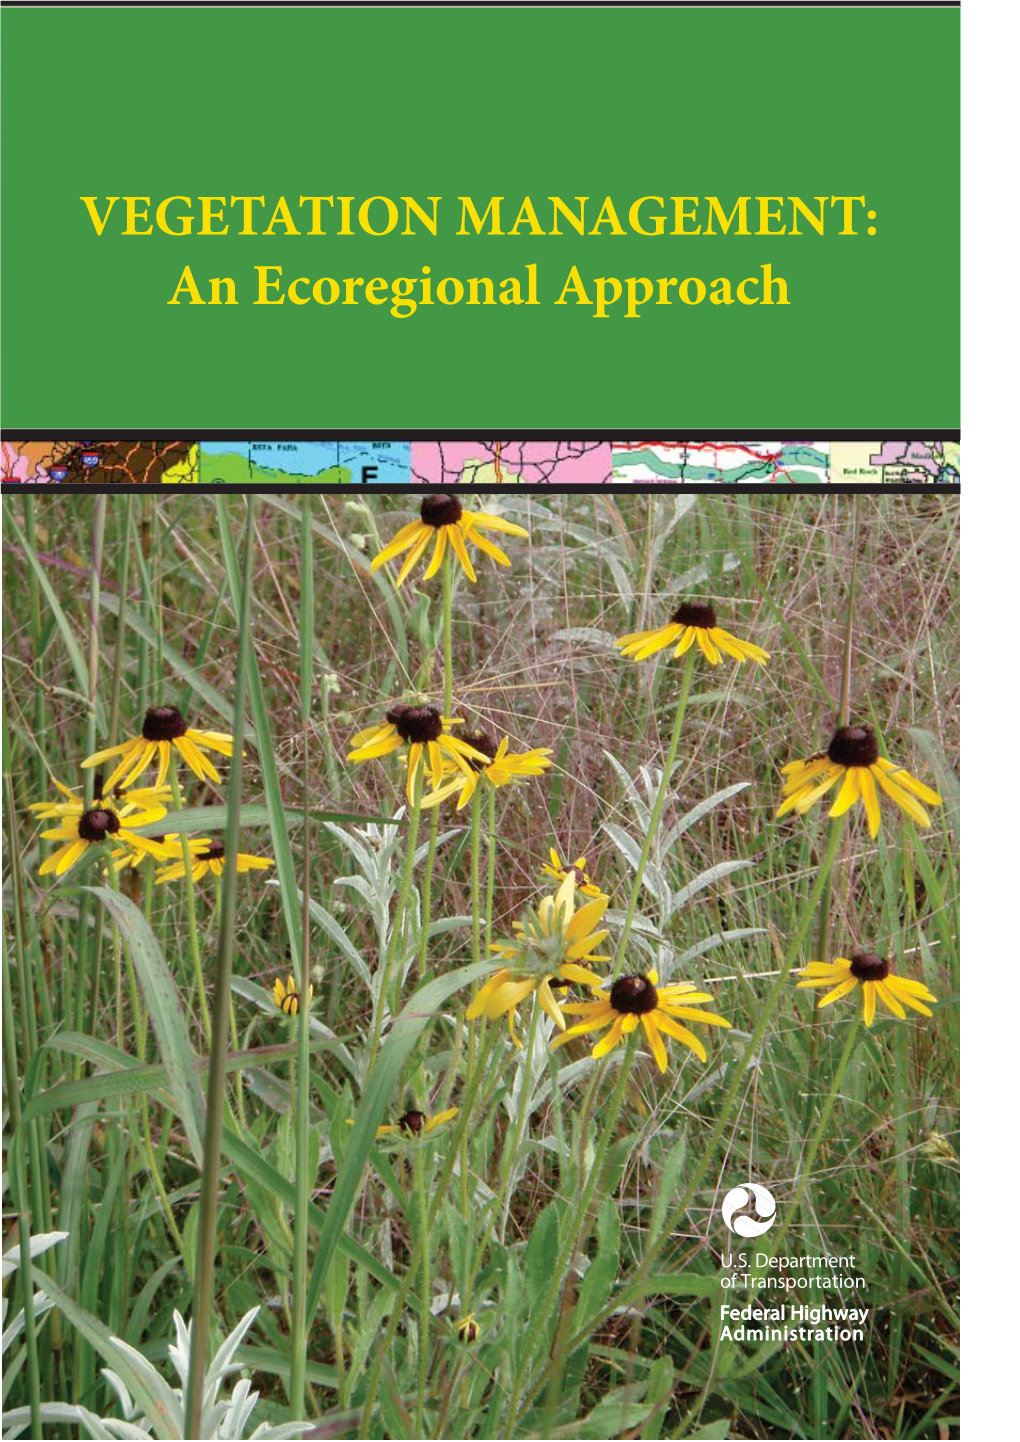 VEGETATION MANAGEMENT, Vegetationan Ecological MANAGEMENT: Approach an Ecoregional Approach 122 VEGETATION MANAGEMENT: an Ecoregional Approach